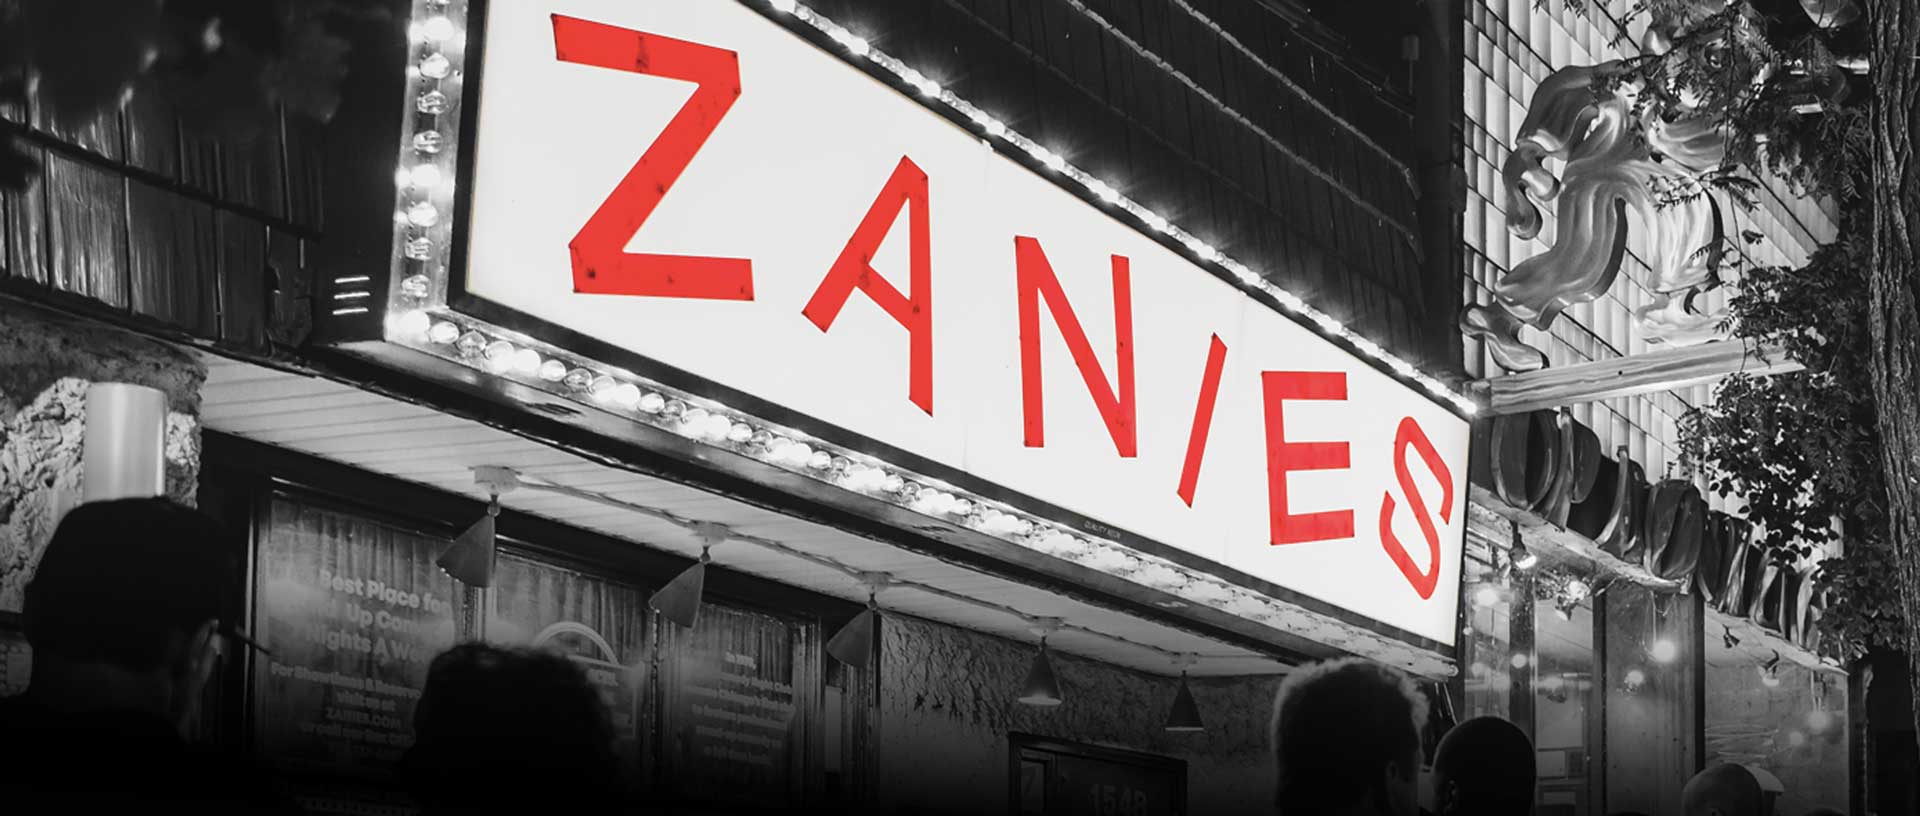 Zanies Nashville Comedy Shows Get Tickets Online Zanies Nashville